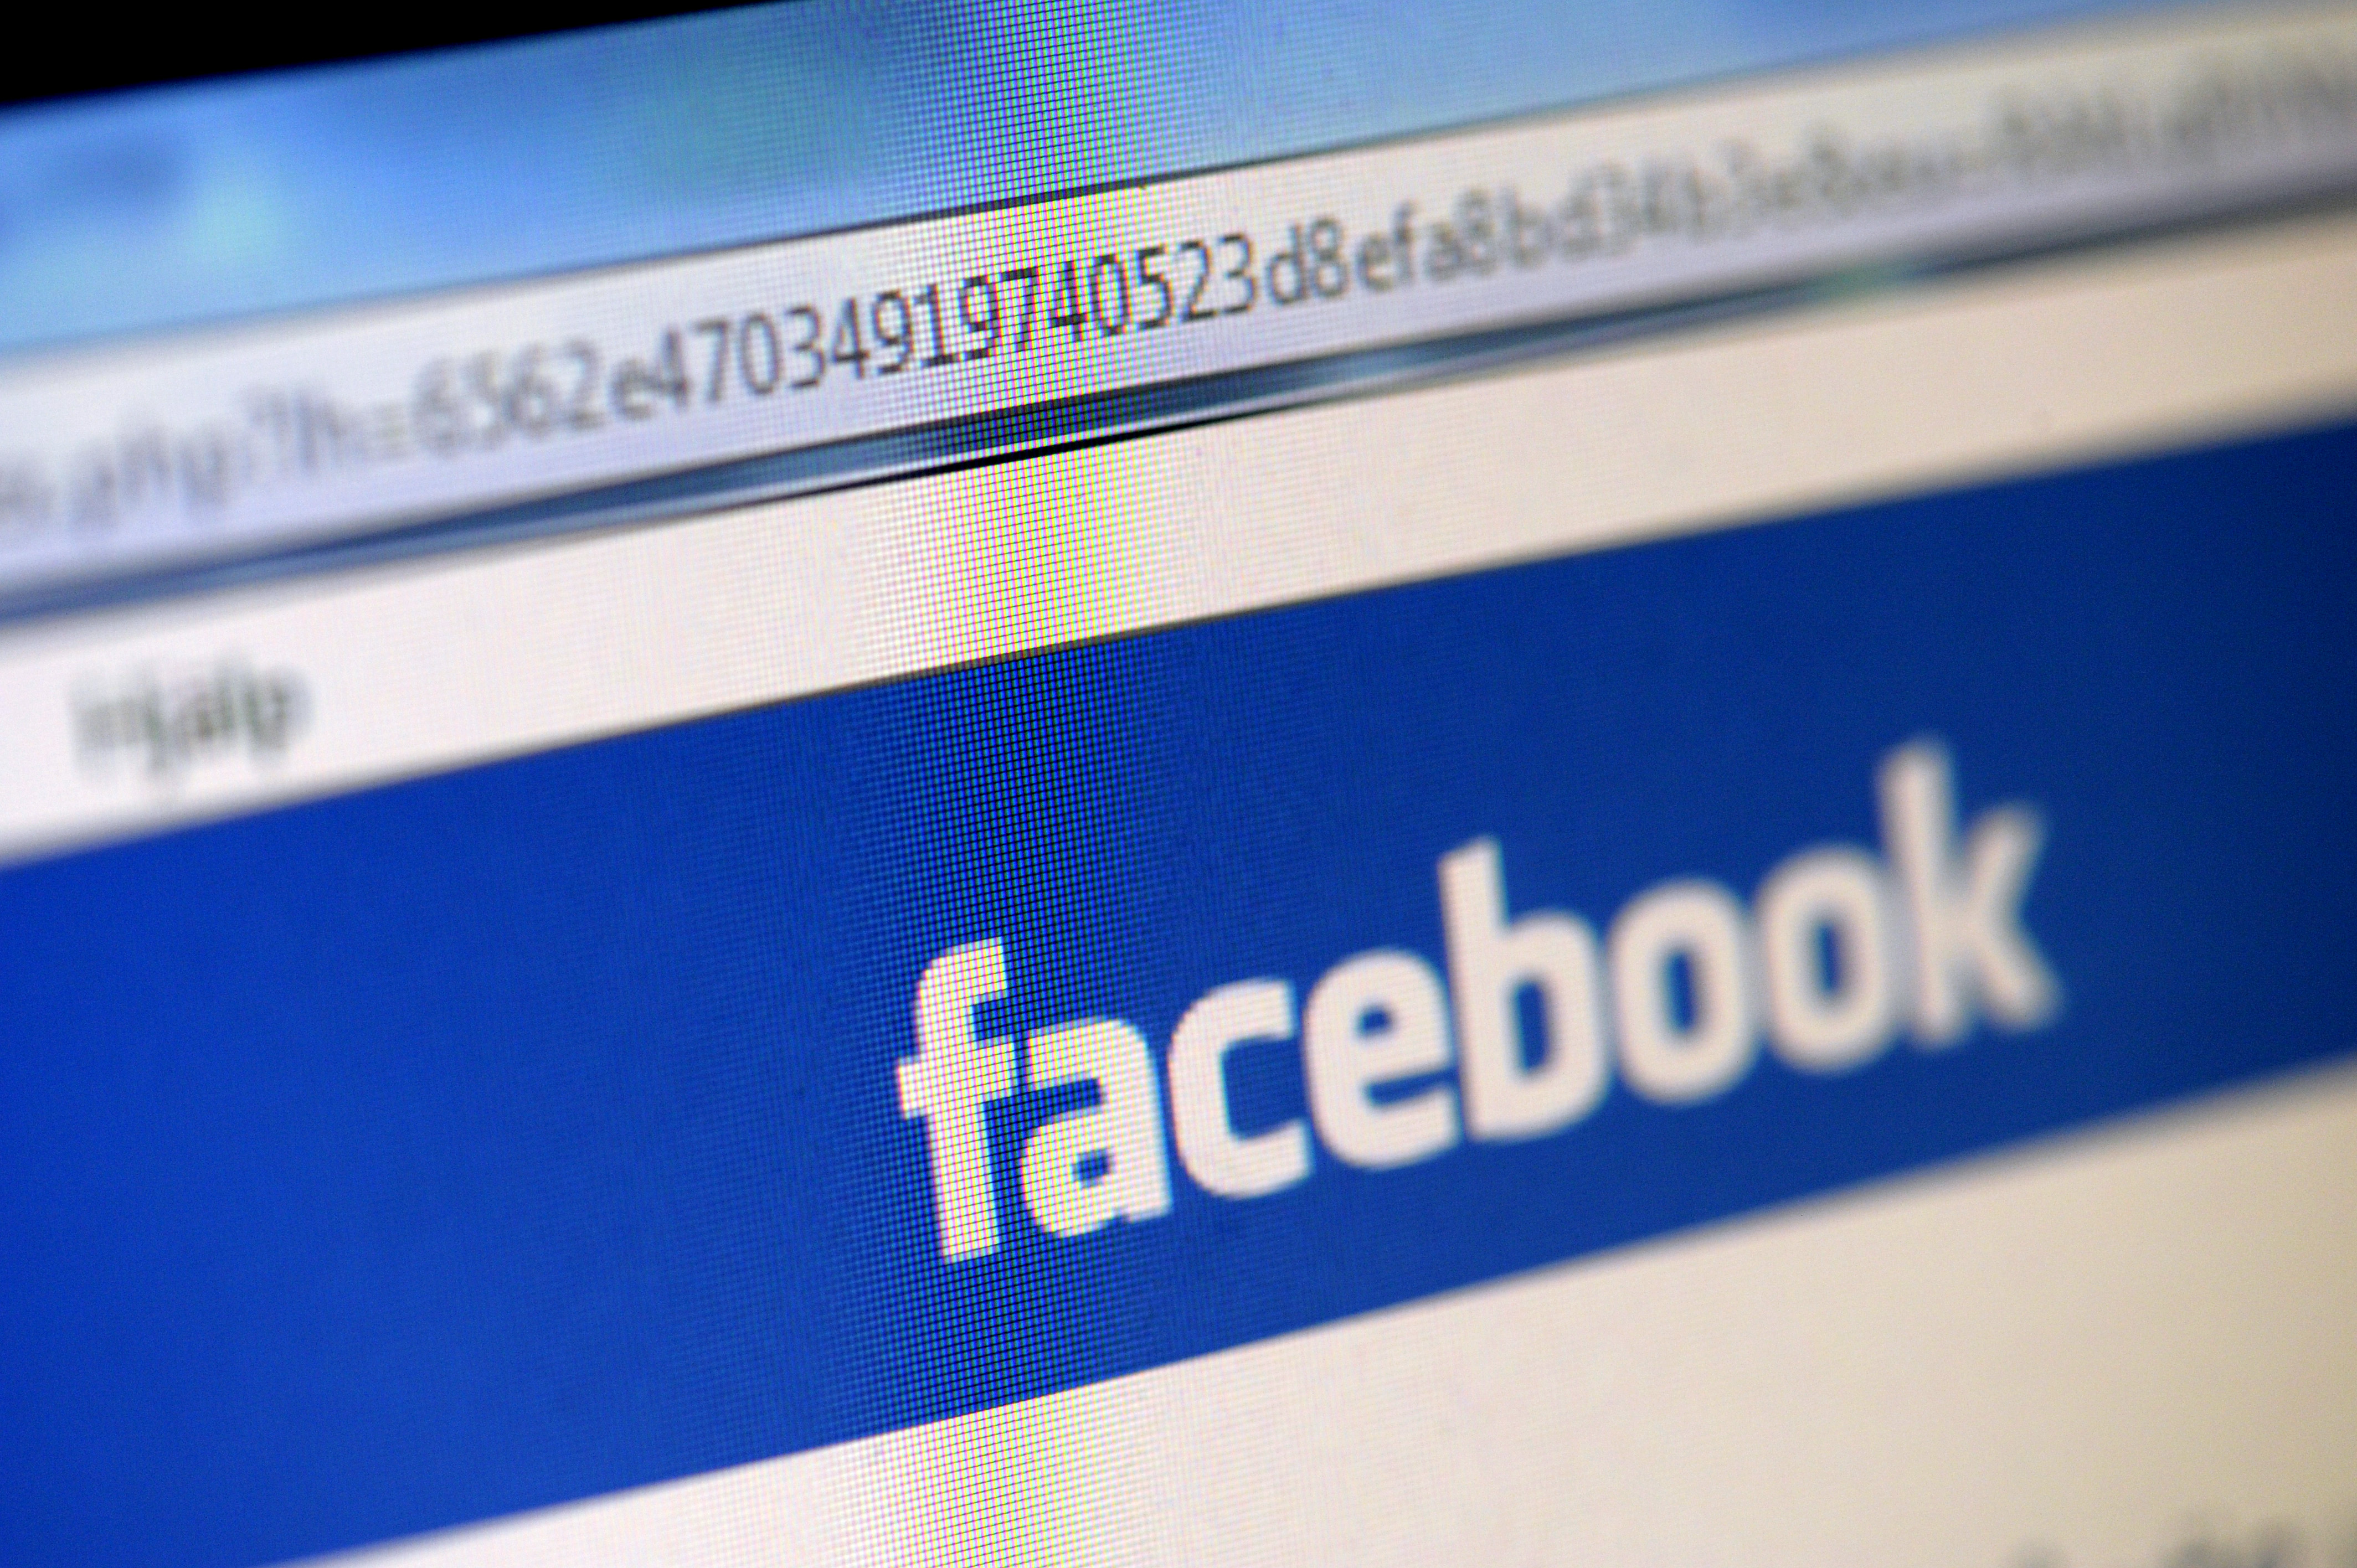 Om du länkar något kul till dina kompisar på Facebook kan du stängas av i framtiden - om den nya lagen träder i kraft.